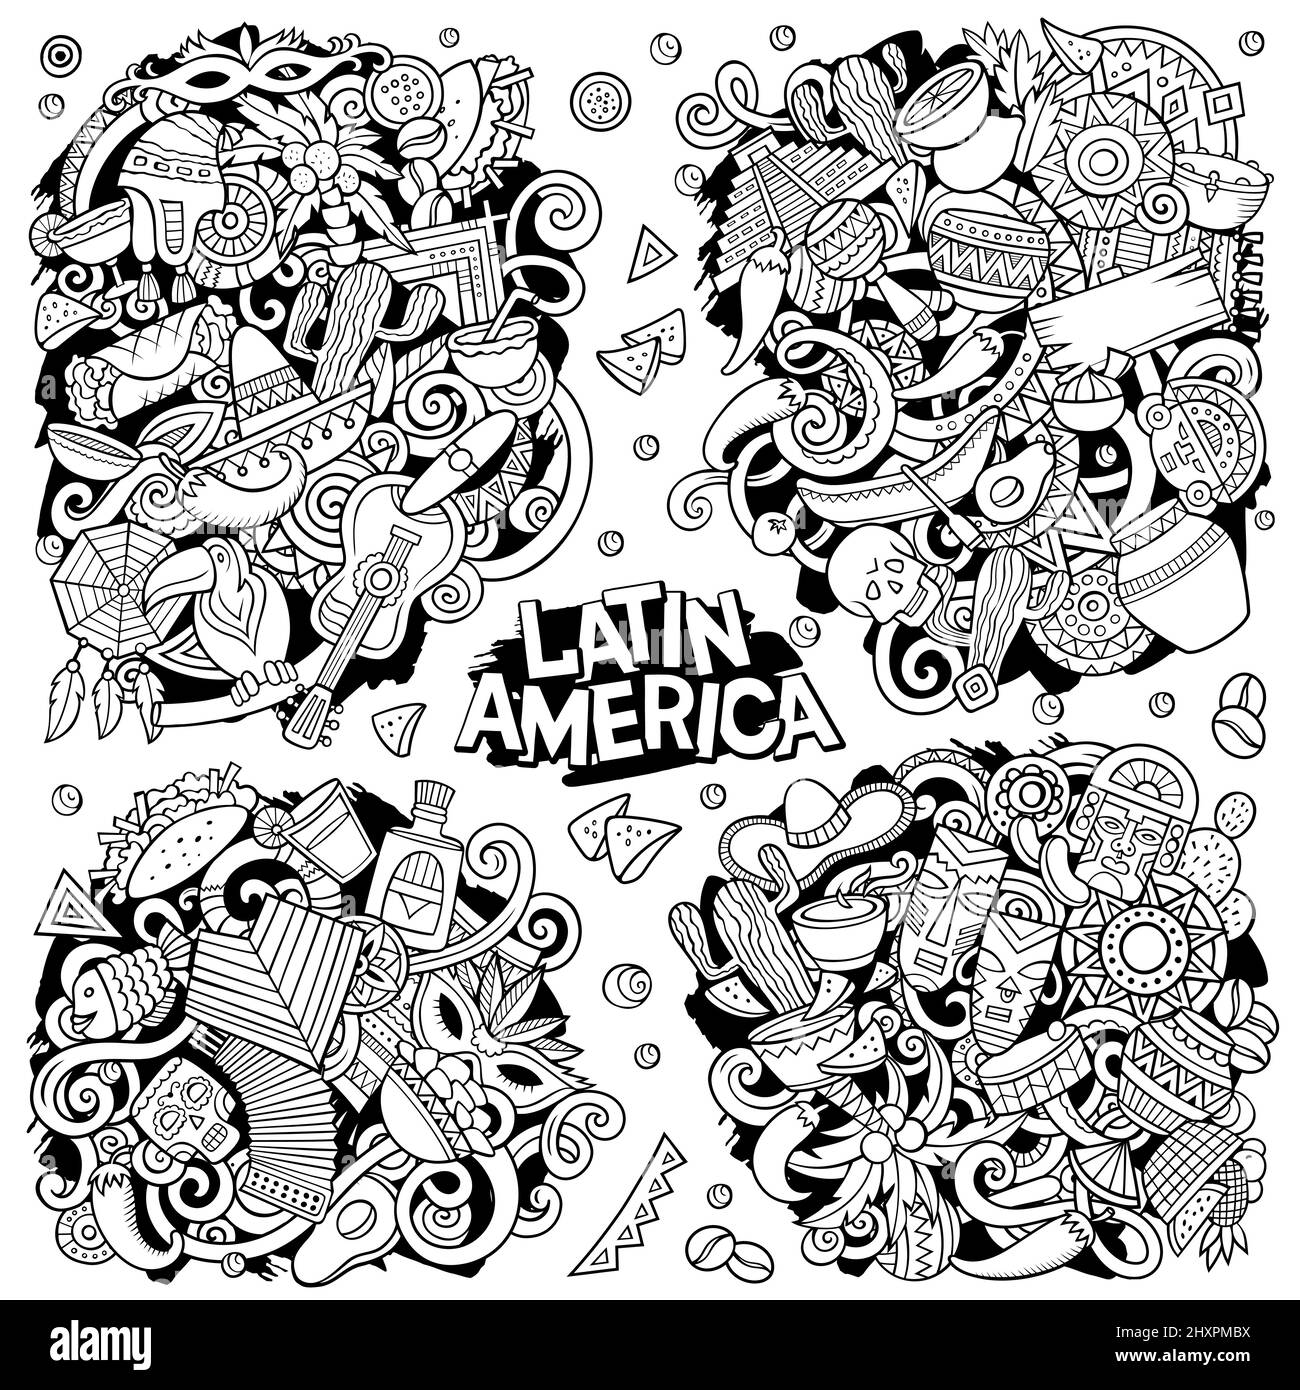 Lateinamerikanische Cartoon Vektor Doodle Designs Set. Skizzenhafte, detailreiche Kompositionen mit vielen lateinamerikanischen Objekten und Symbolen. Alle Elemente sind getrennt Stock Vektor